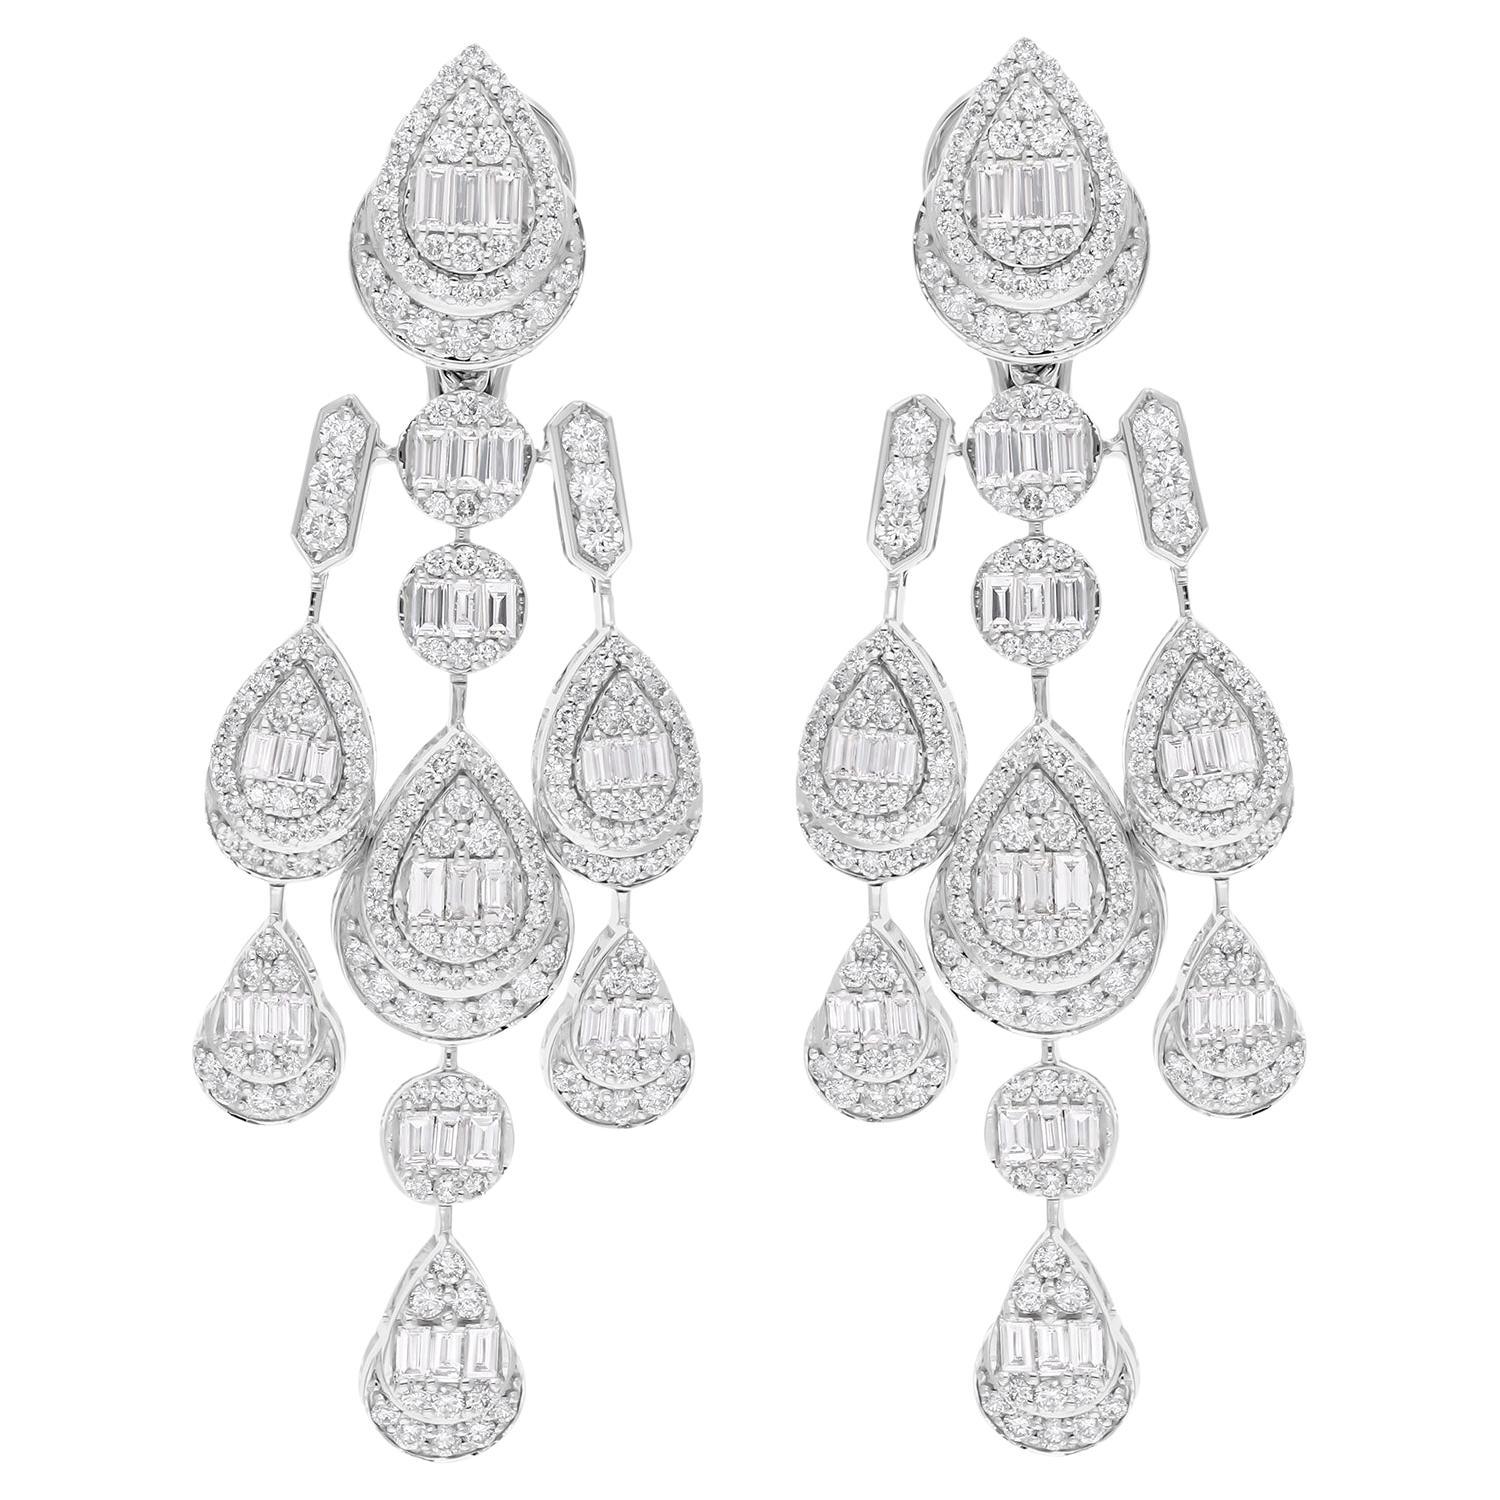 Baguette Diamond Chandelier Earrings Solid 18 Karat White Gold Handmade Jewelry